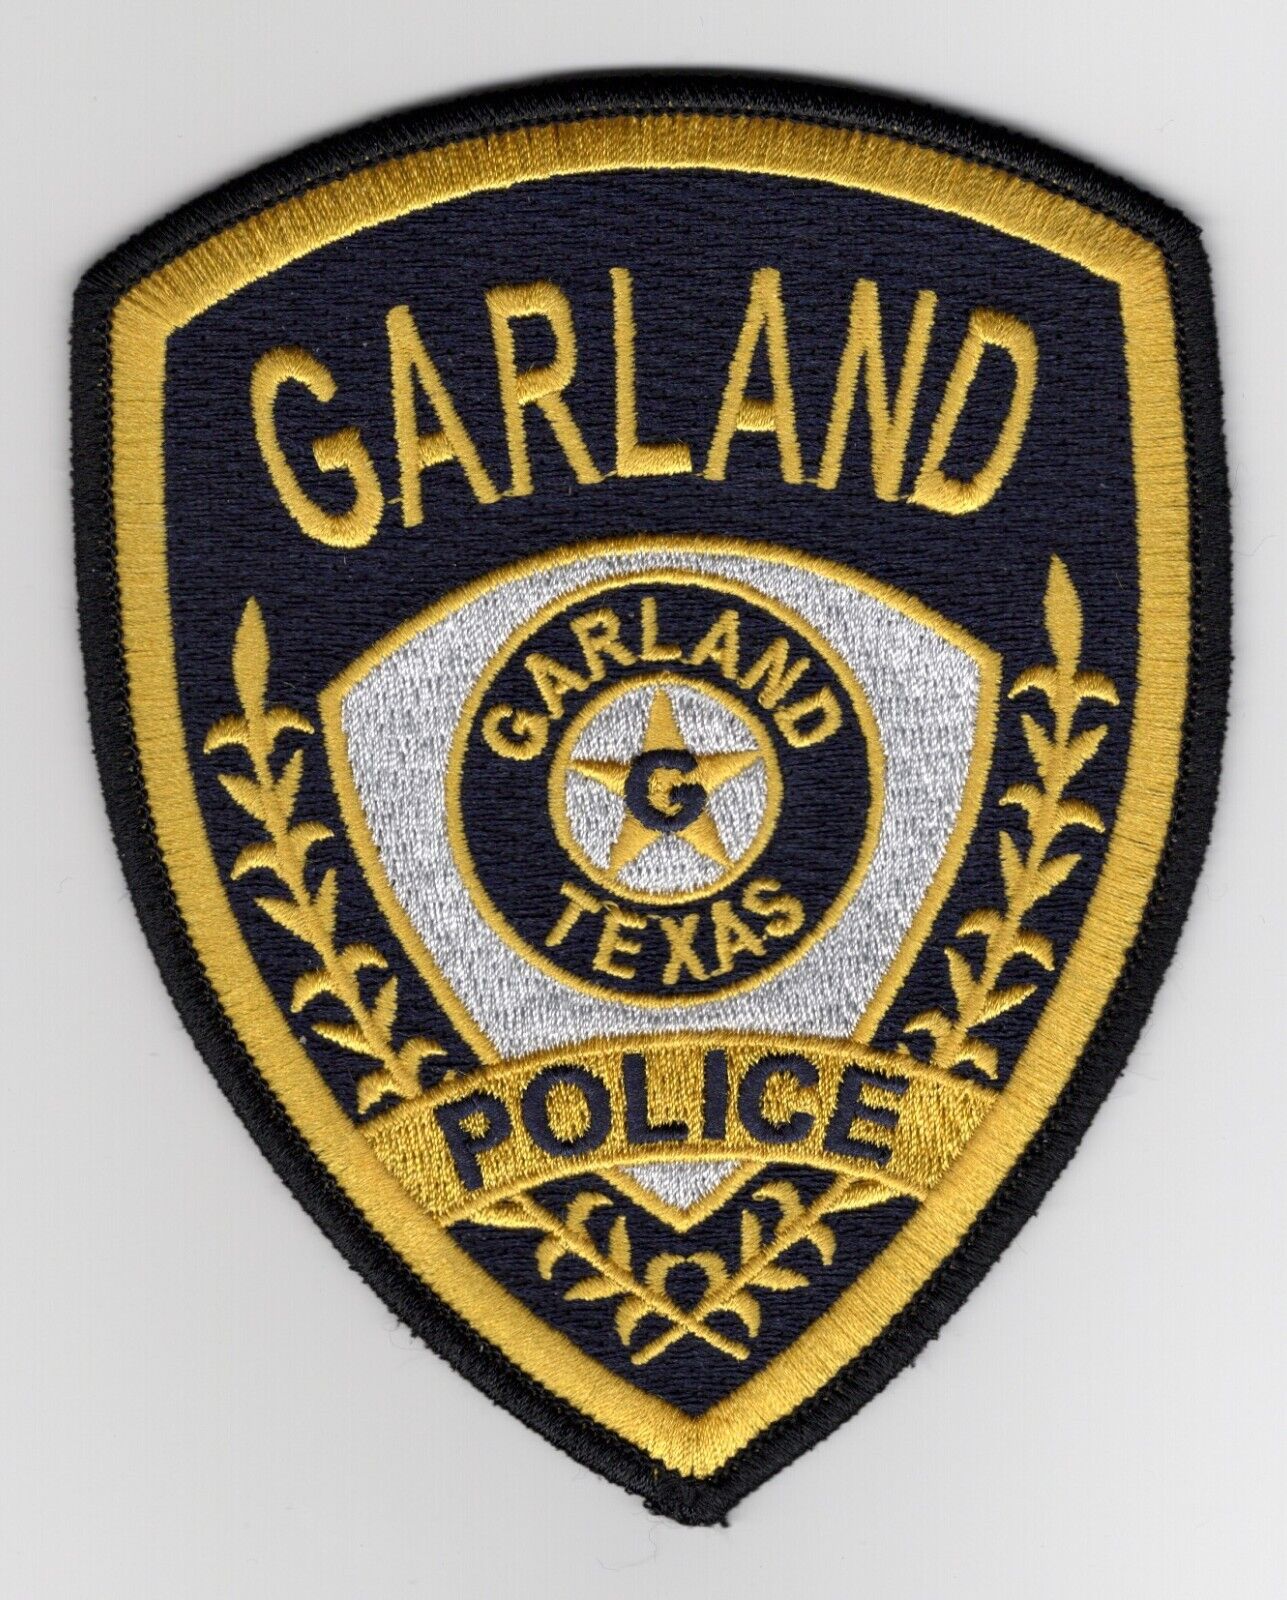 Texas TX Garland Texas Police Patch